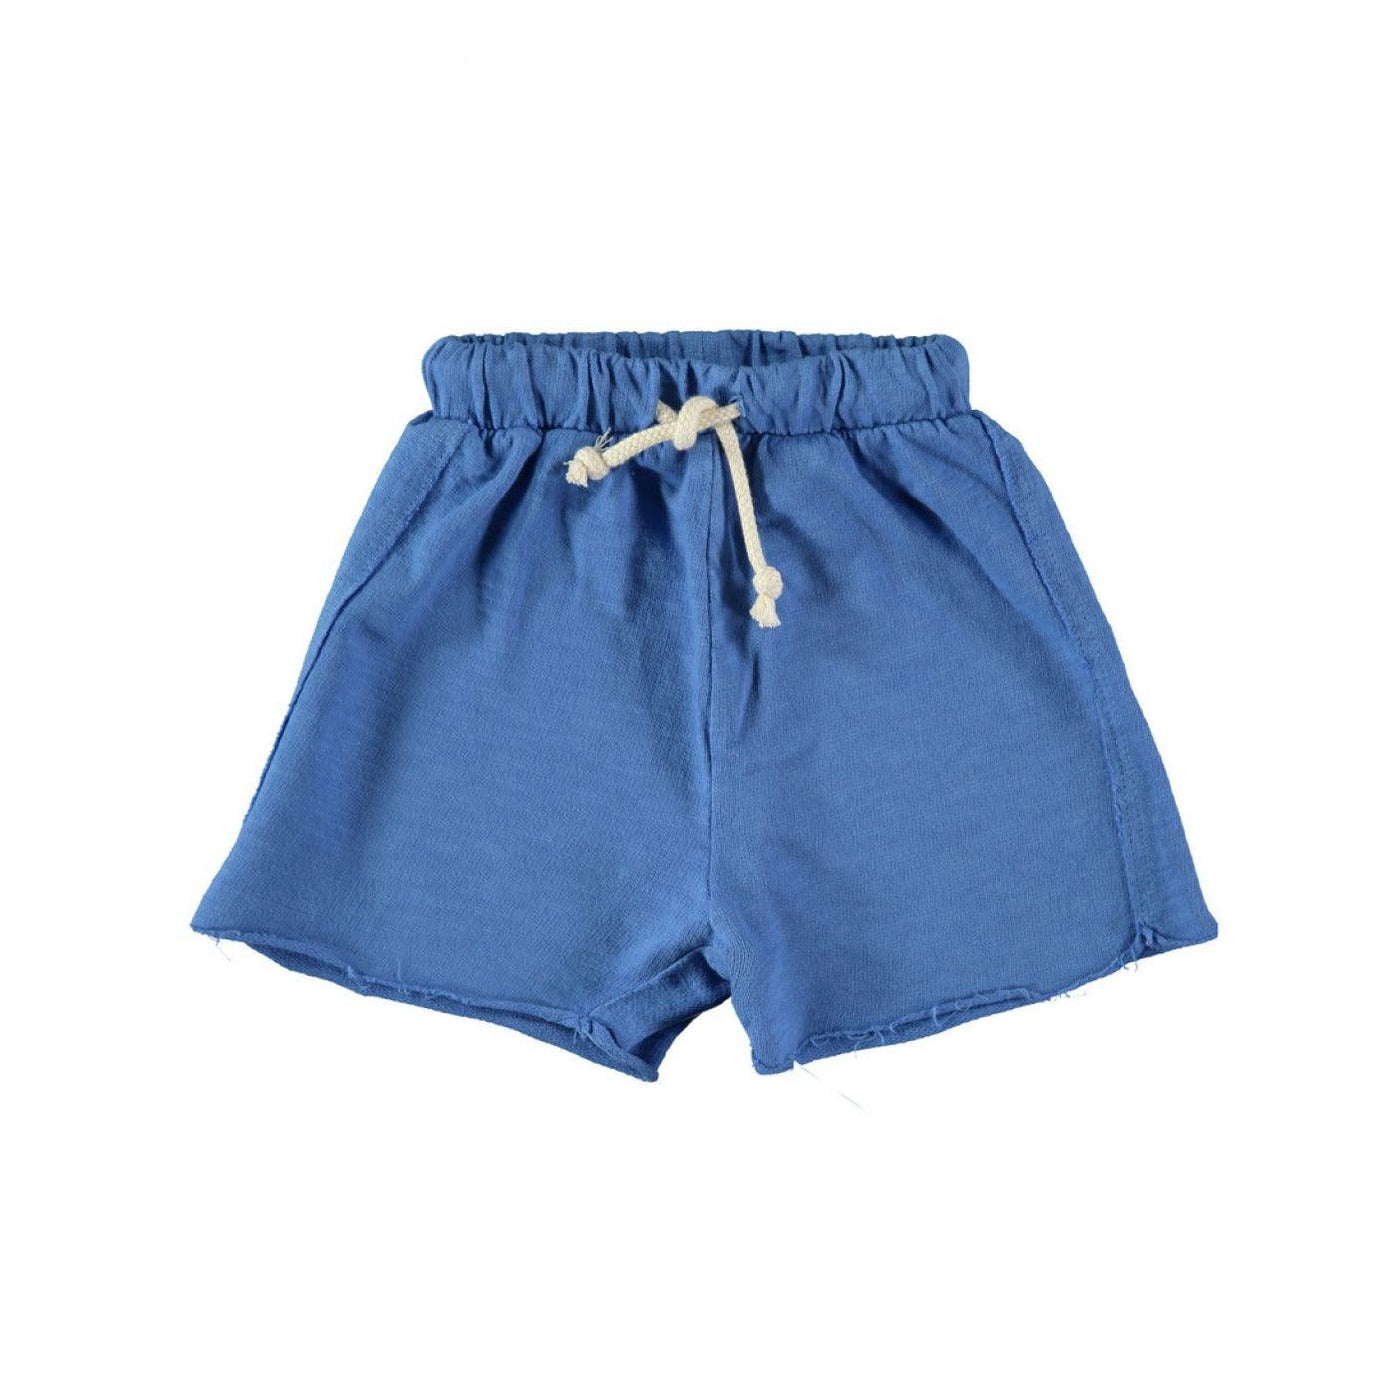 BABYCLIC - Shorts Emporda Electric Blue - Le CirQue Kidsconceptstore 